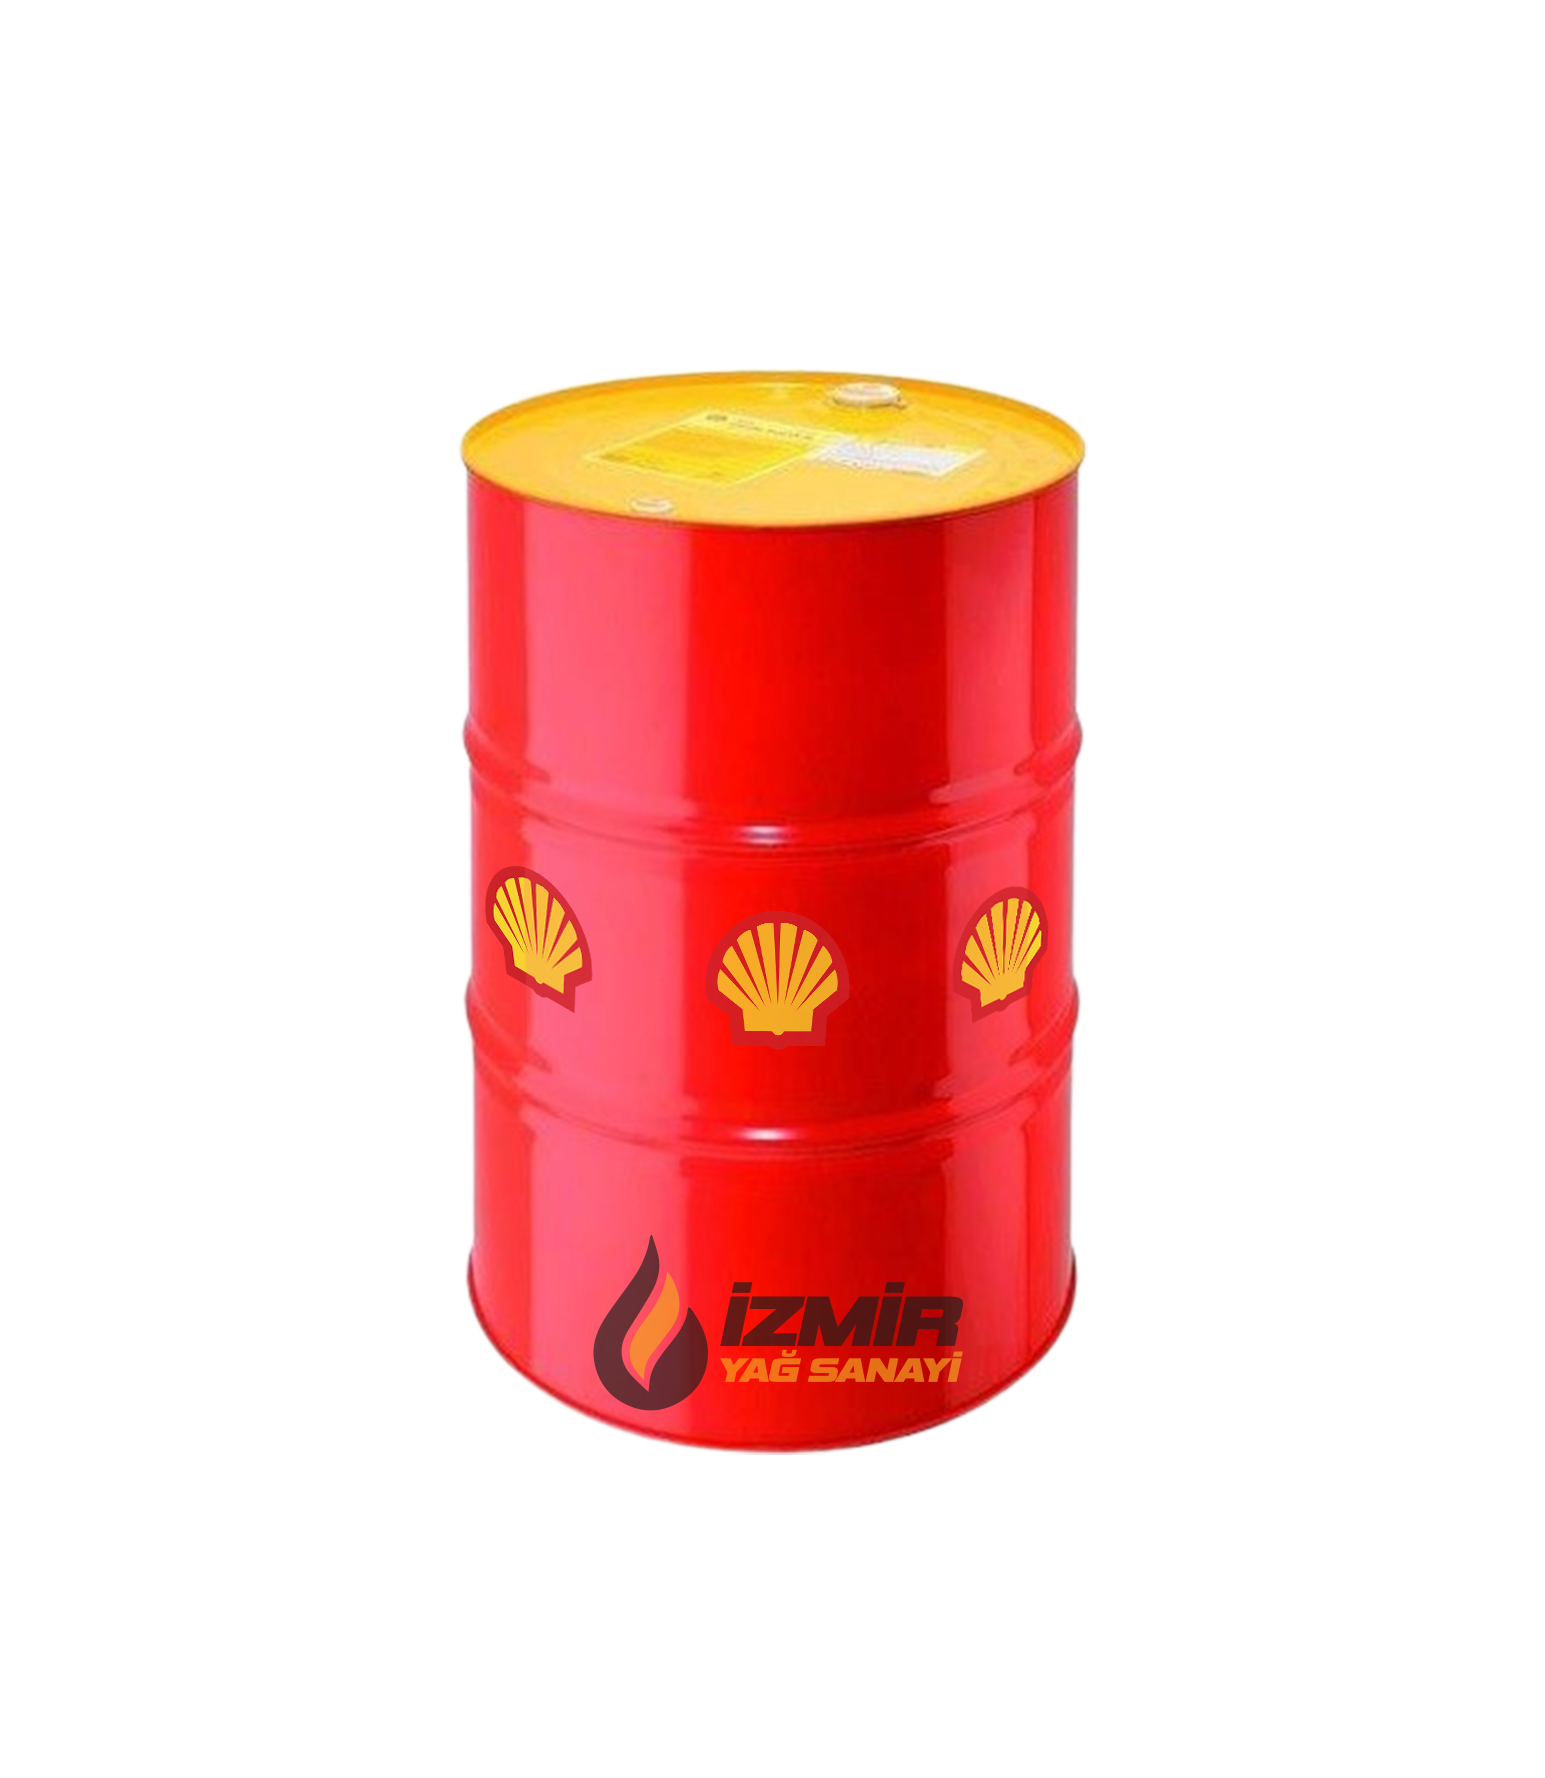 Shell Spirax S6 AXME 75W-140 209 Litre | ağır hizmet dişli sistemlerinde üstün yakıt verimliliği ve koruma sunar.